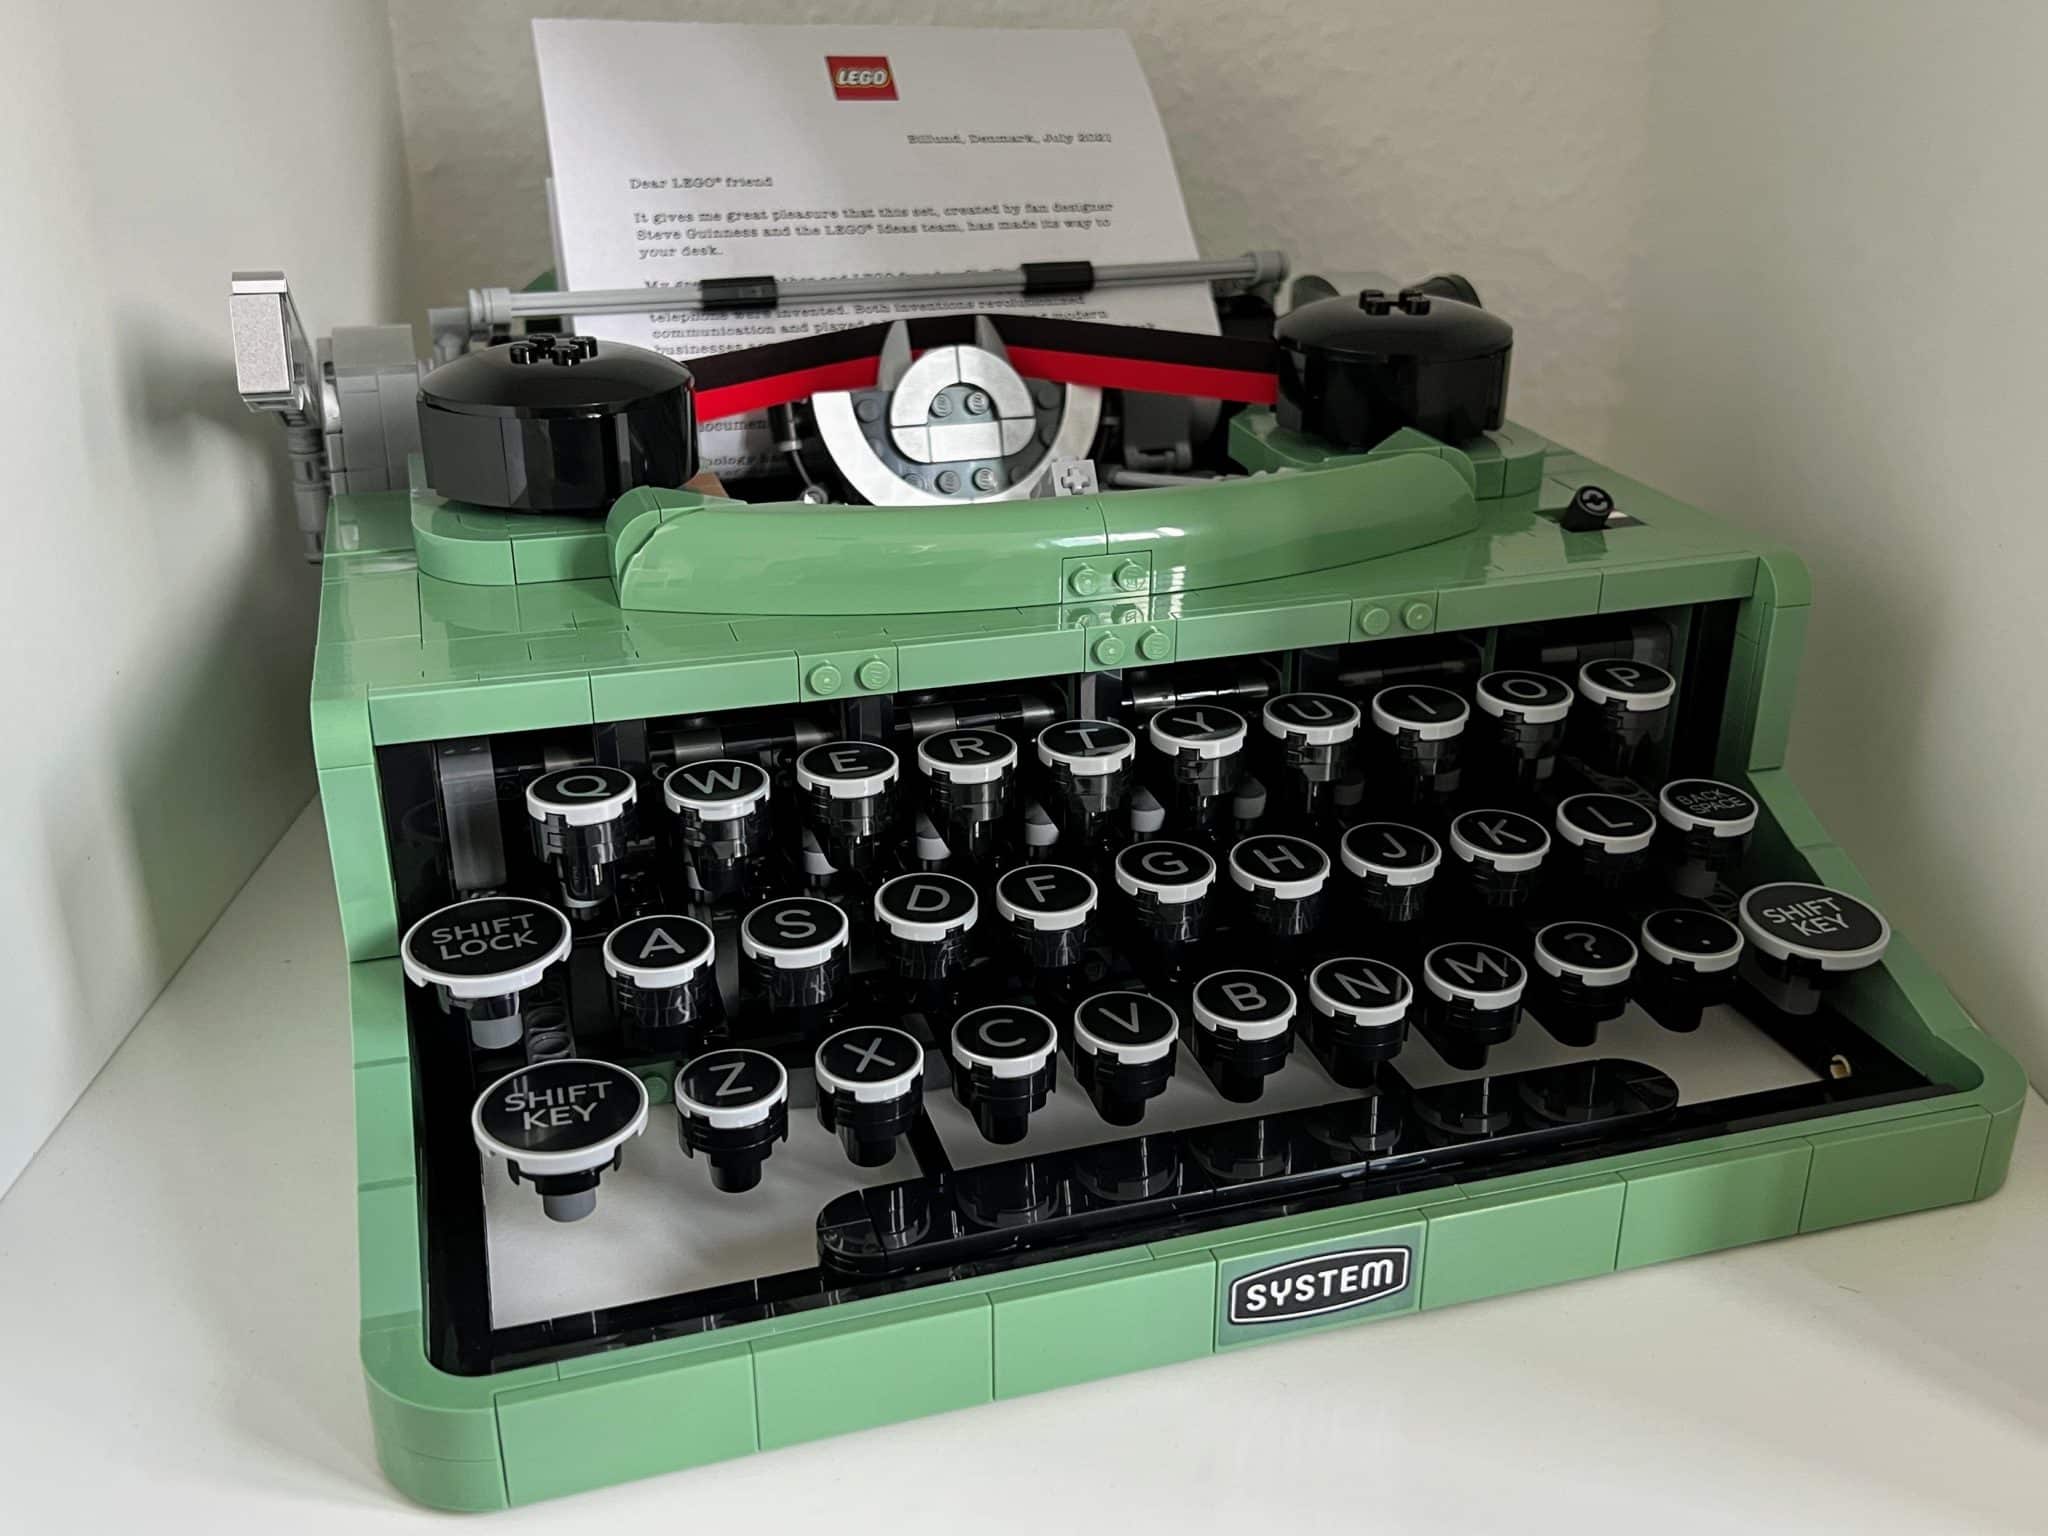 LEGO® Ideas Modells (21327) einer klassischen Schreibmaschine